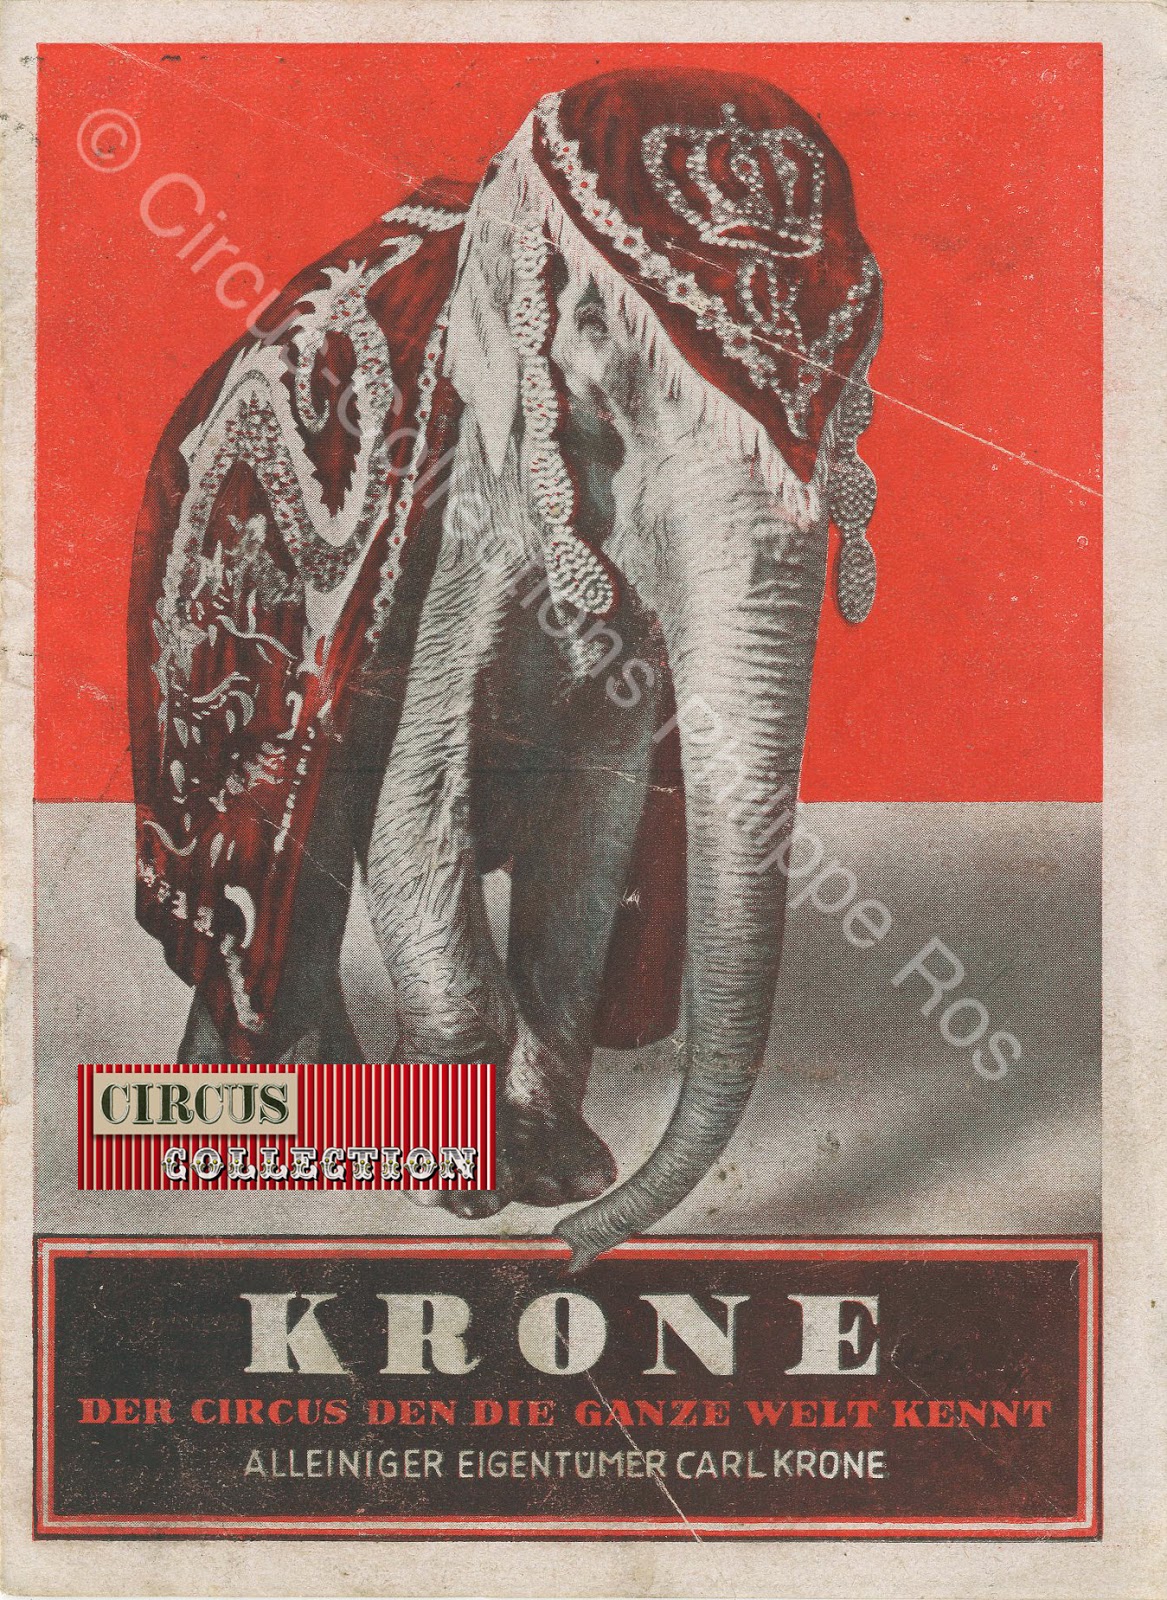 Programme du Kronebau circus de Munich, un éléphant richement harnaché en couverture